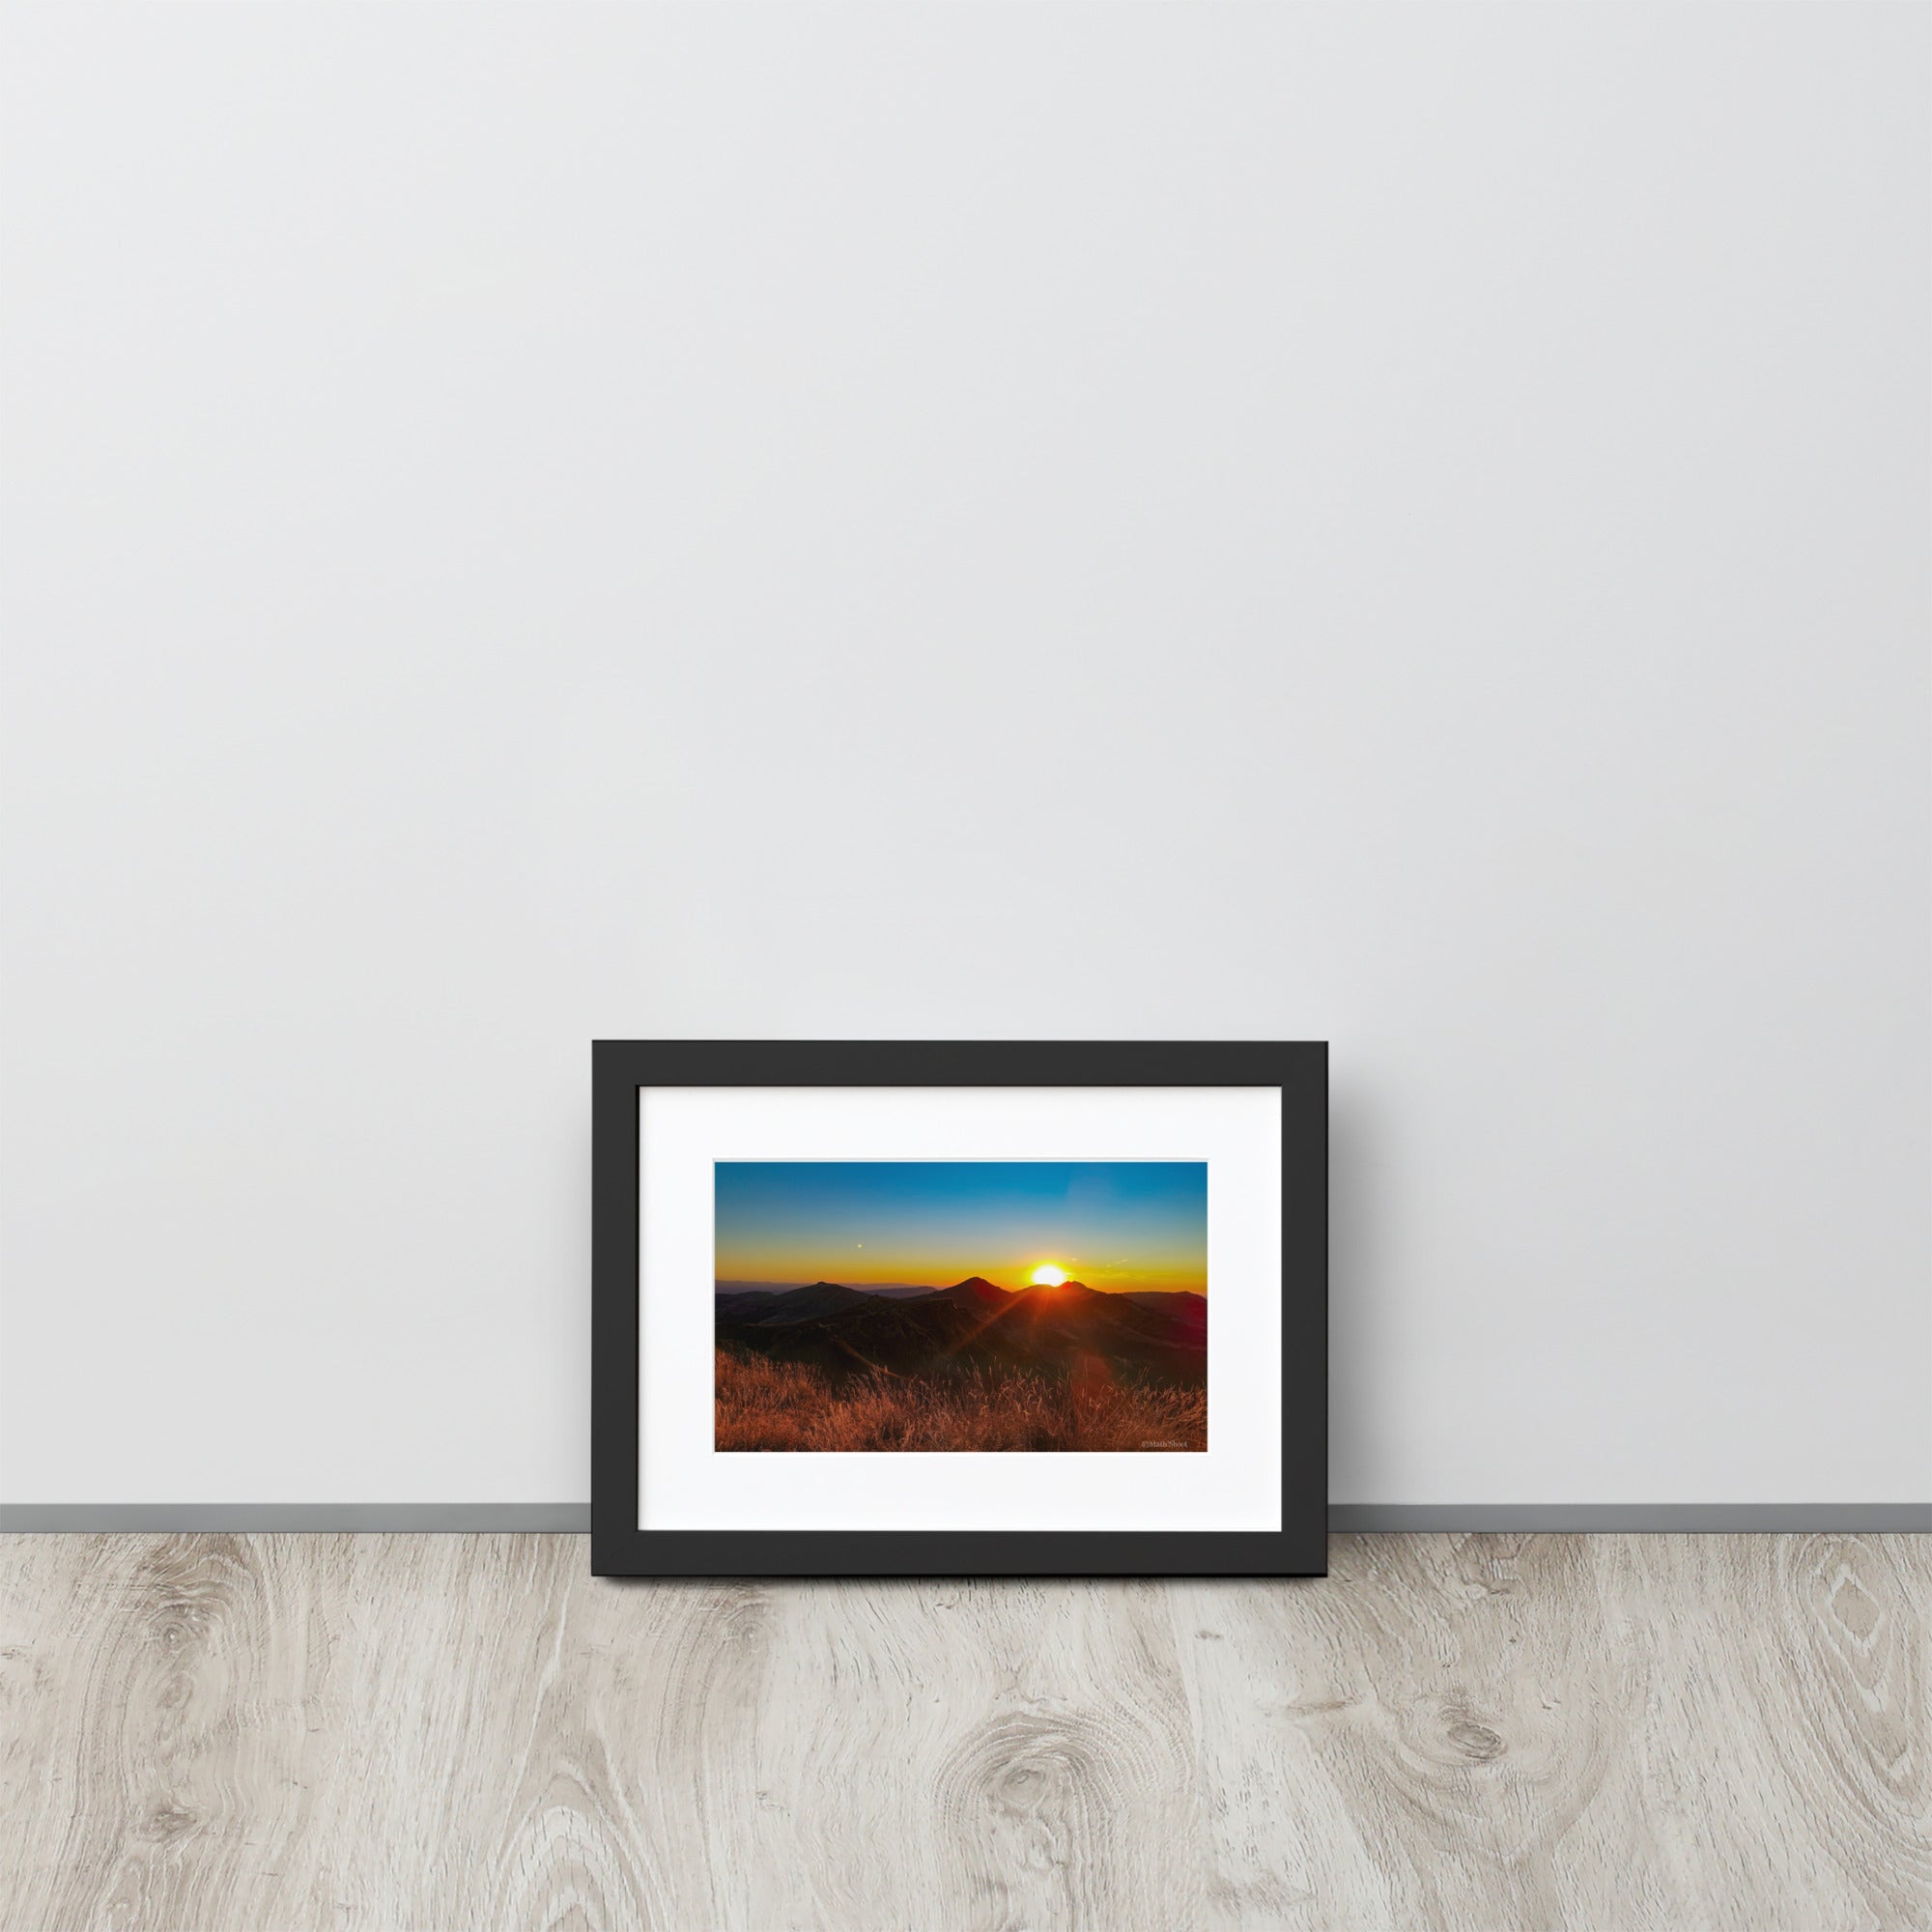 Poster encadré 'Coucher d'été' montrant un paysage montagneux du Cantal au coucher du soleil, avec des sommets silhouettés sous un ciel rougeoyant, signé par Math Shoot Fr.